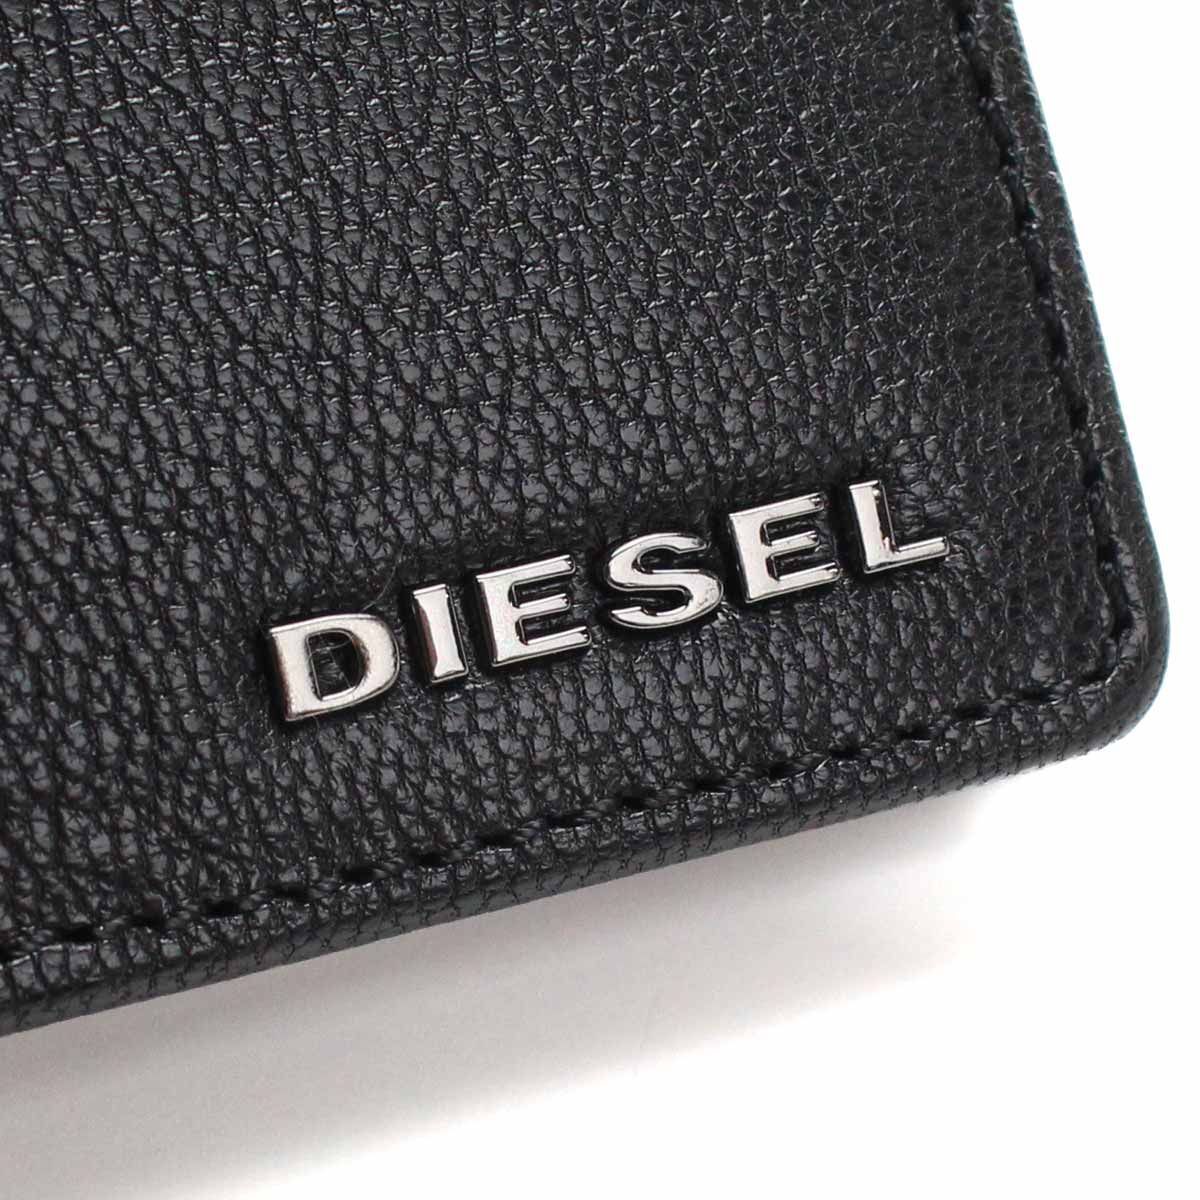 激安商品 新品送料込み ディーゼル DIESEL 財布 二つ折り財布 ブラック